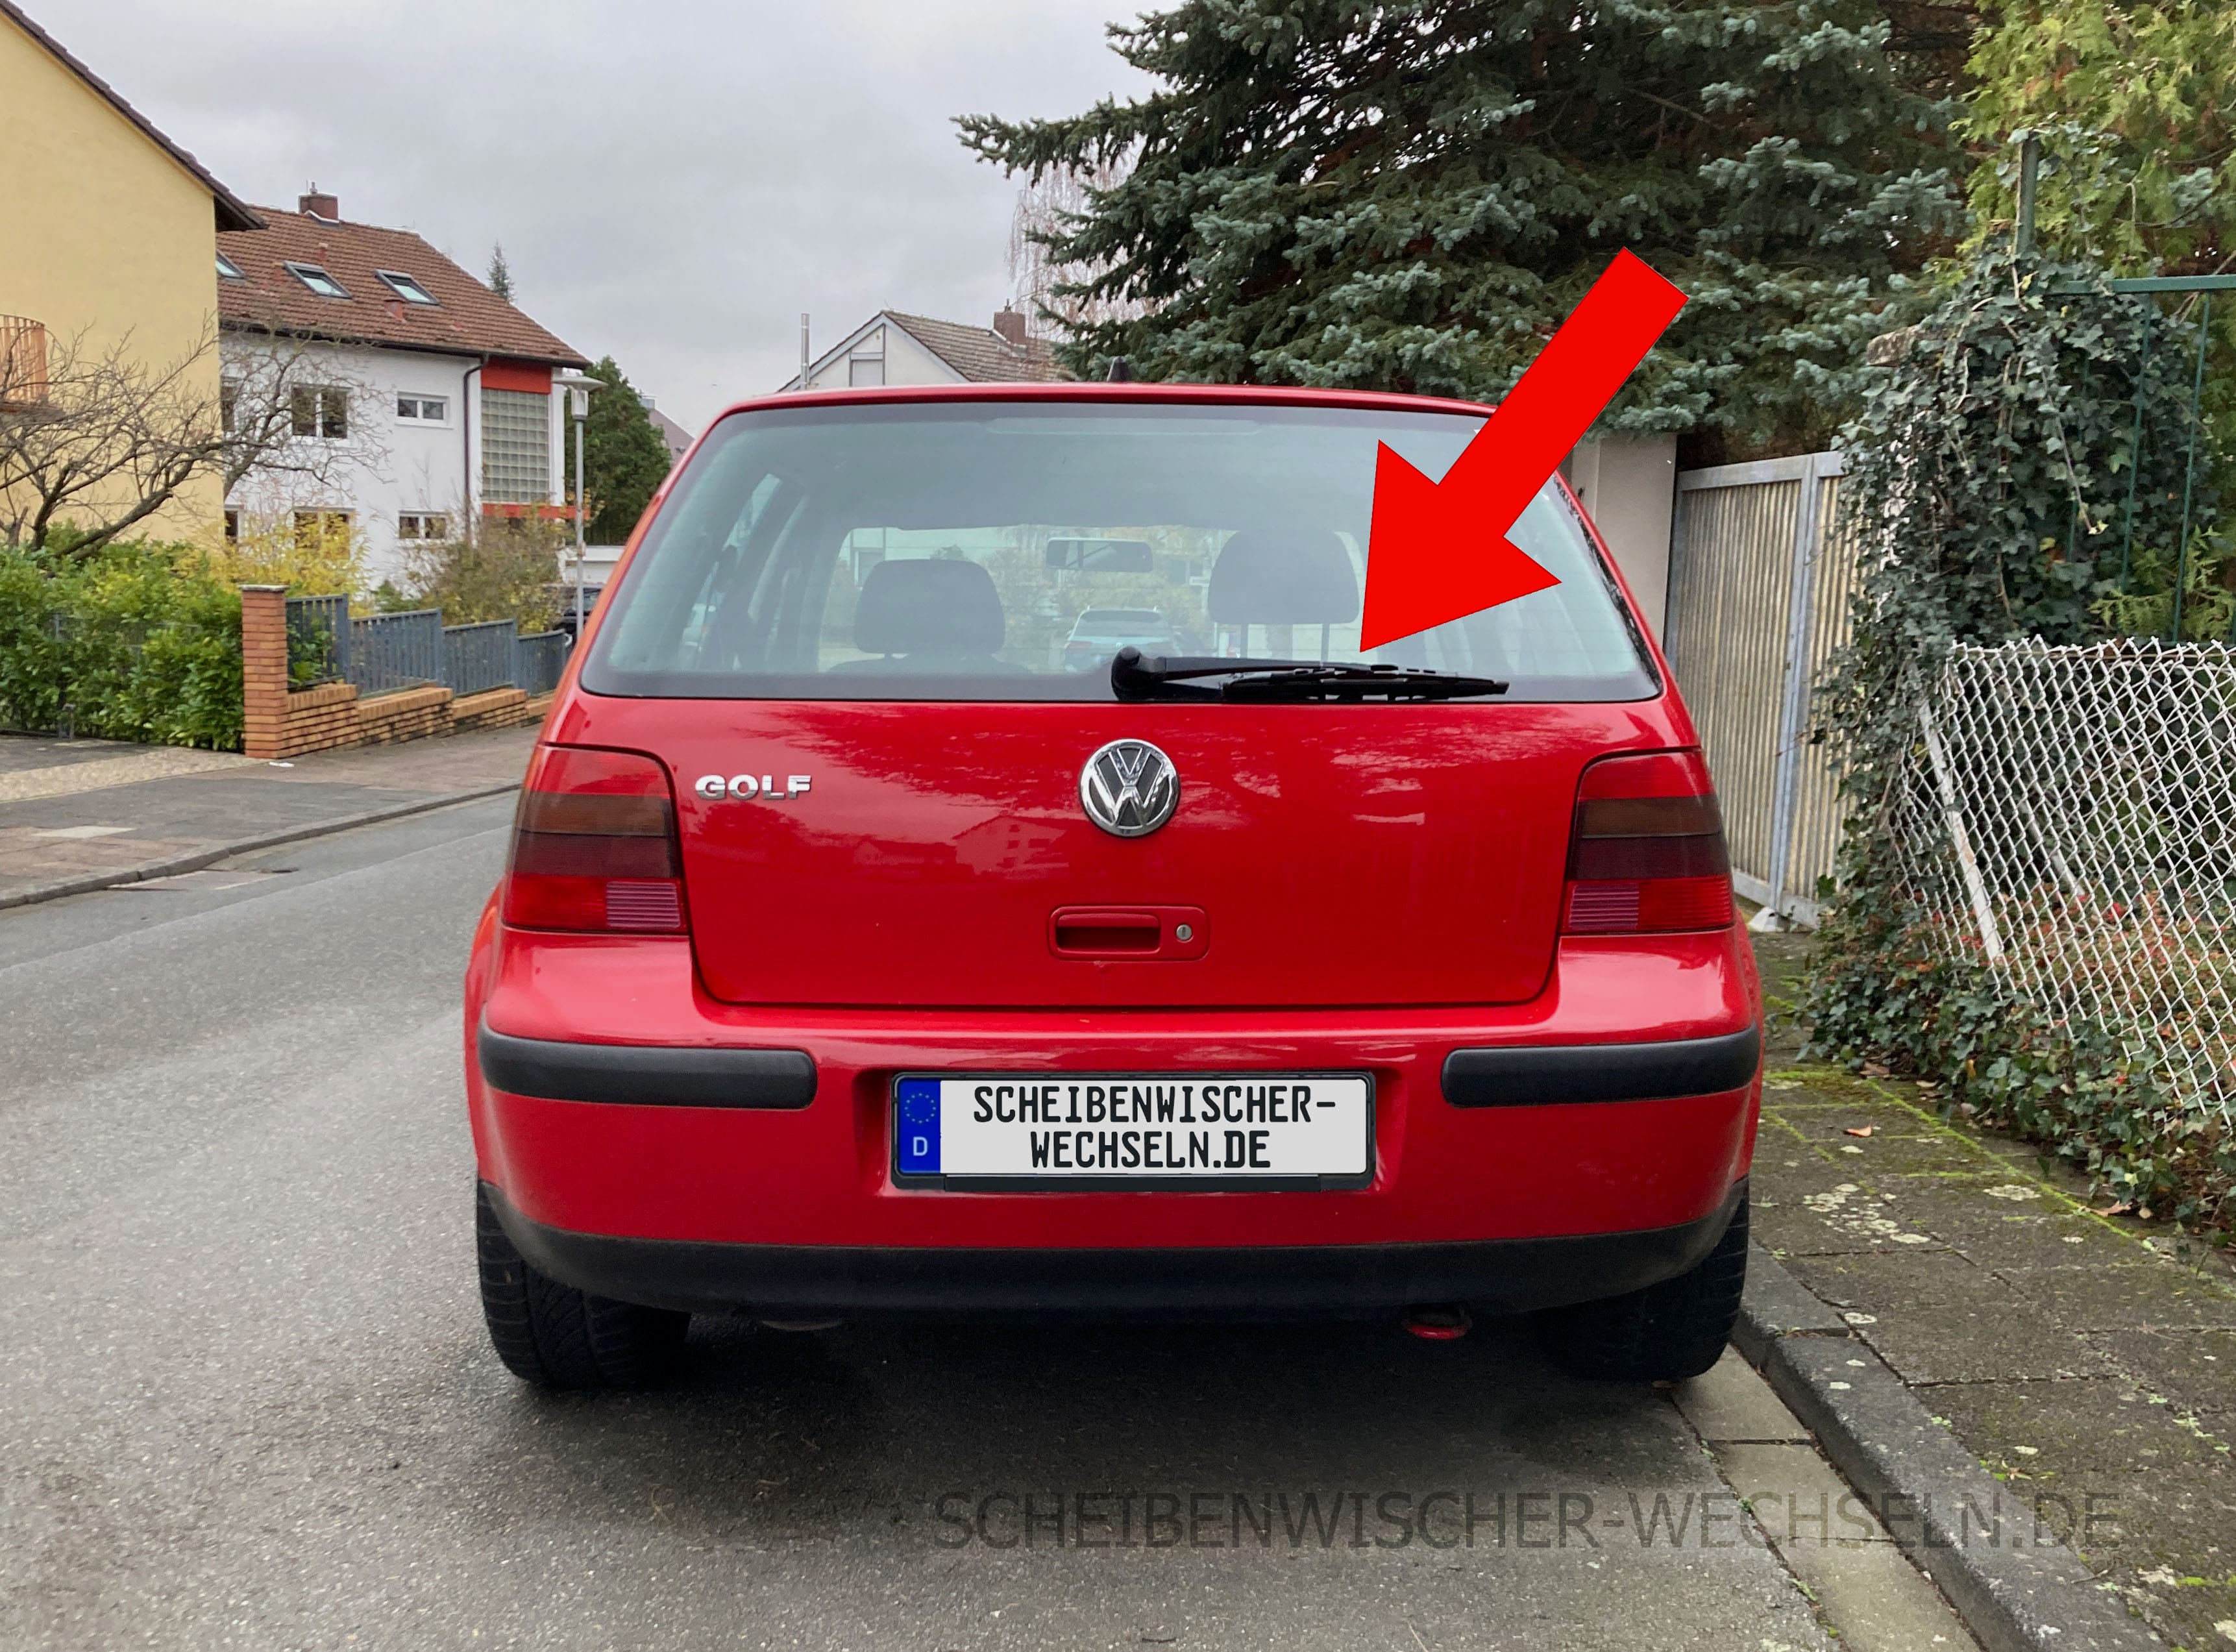 https://scheibenwischer-wechseln.de/wp-content/uploads/Heck-Ansicht-des-VW-Volkswagen-Golf-IV-4.-Gen-Modell-1J-1997-2003-hinten.jpg